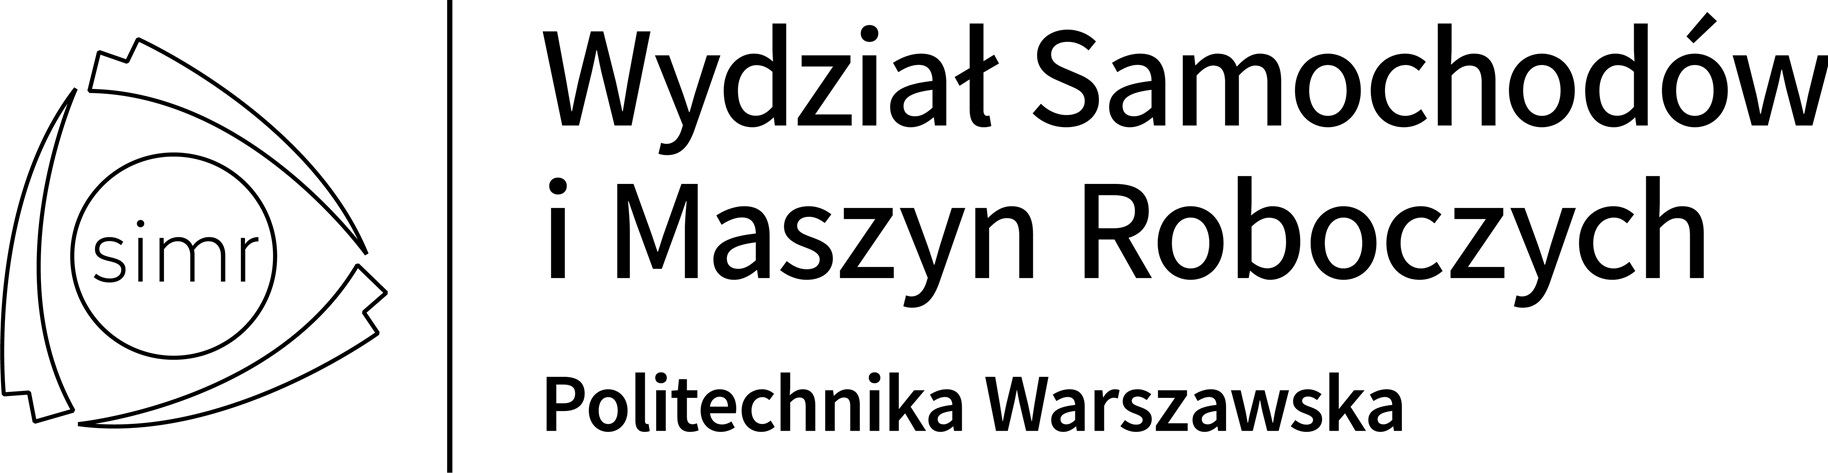 Logo Wydziału Samochodów i Maszyn Roboczych Politechniki Warszawskiej